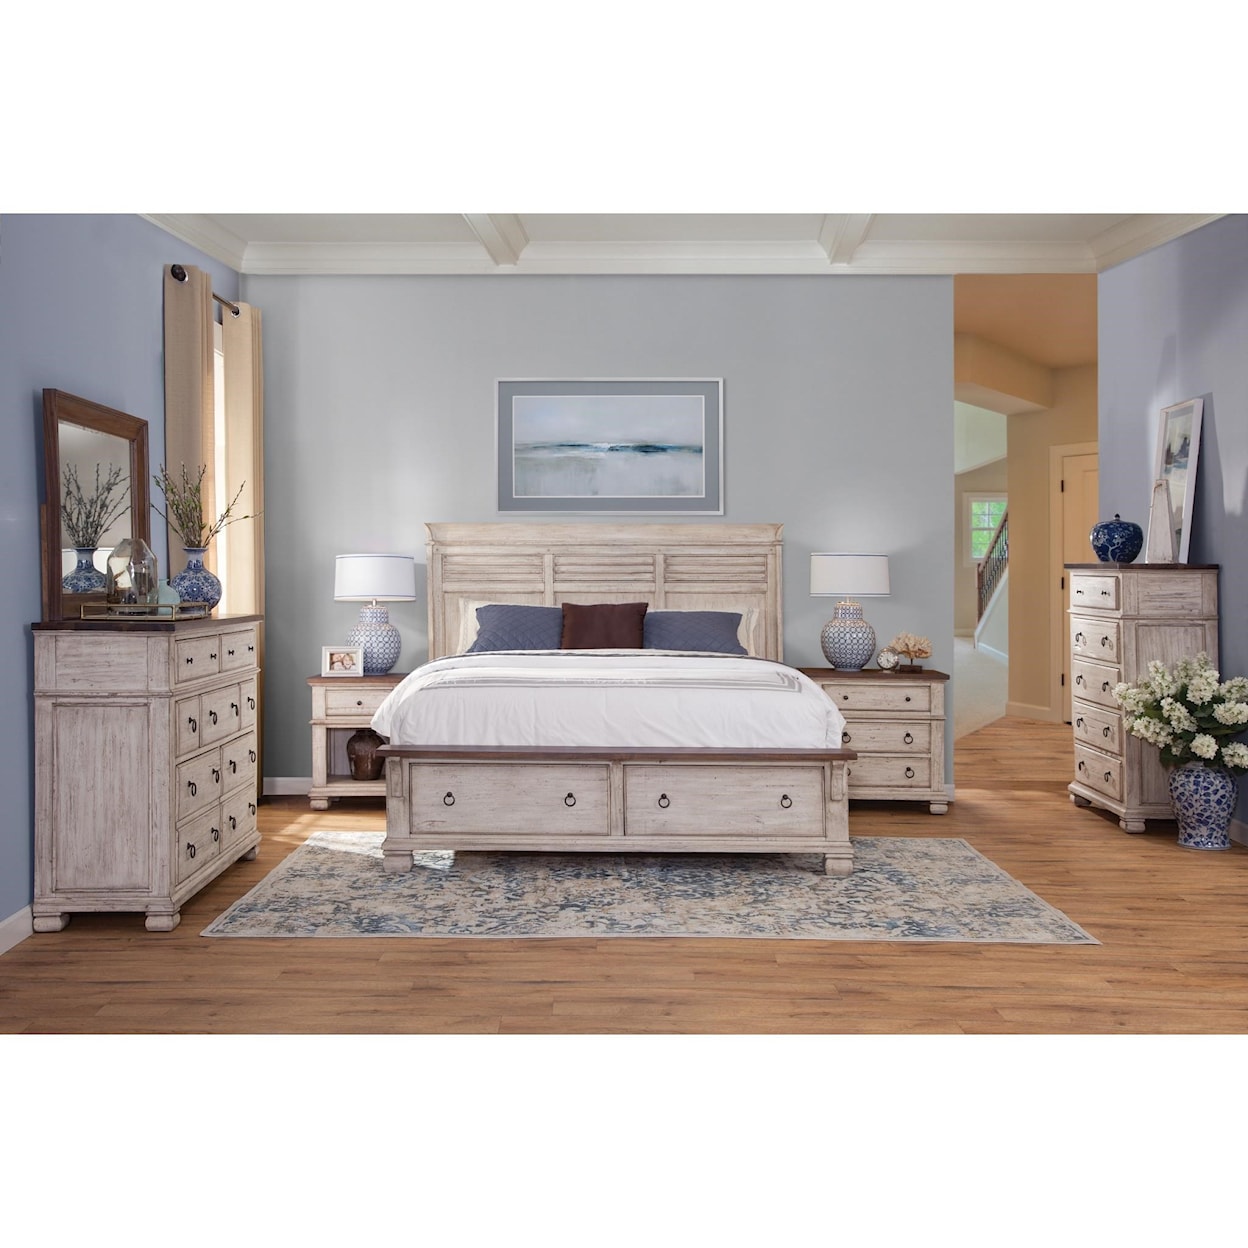 Napa Furniture Design Belmont Queen Storage Bed